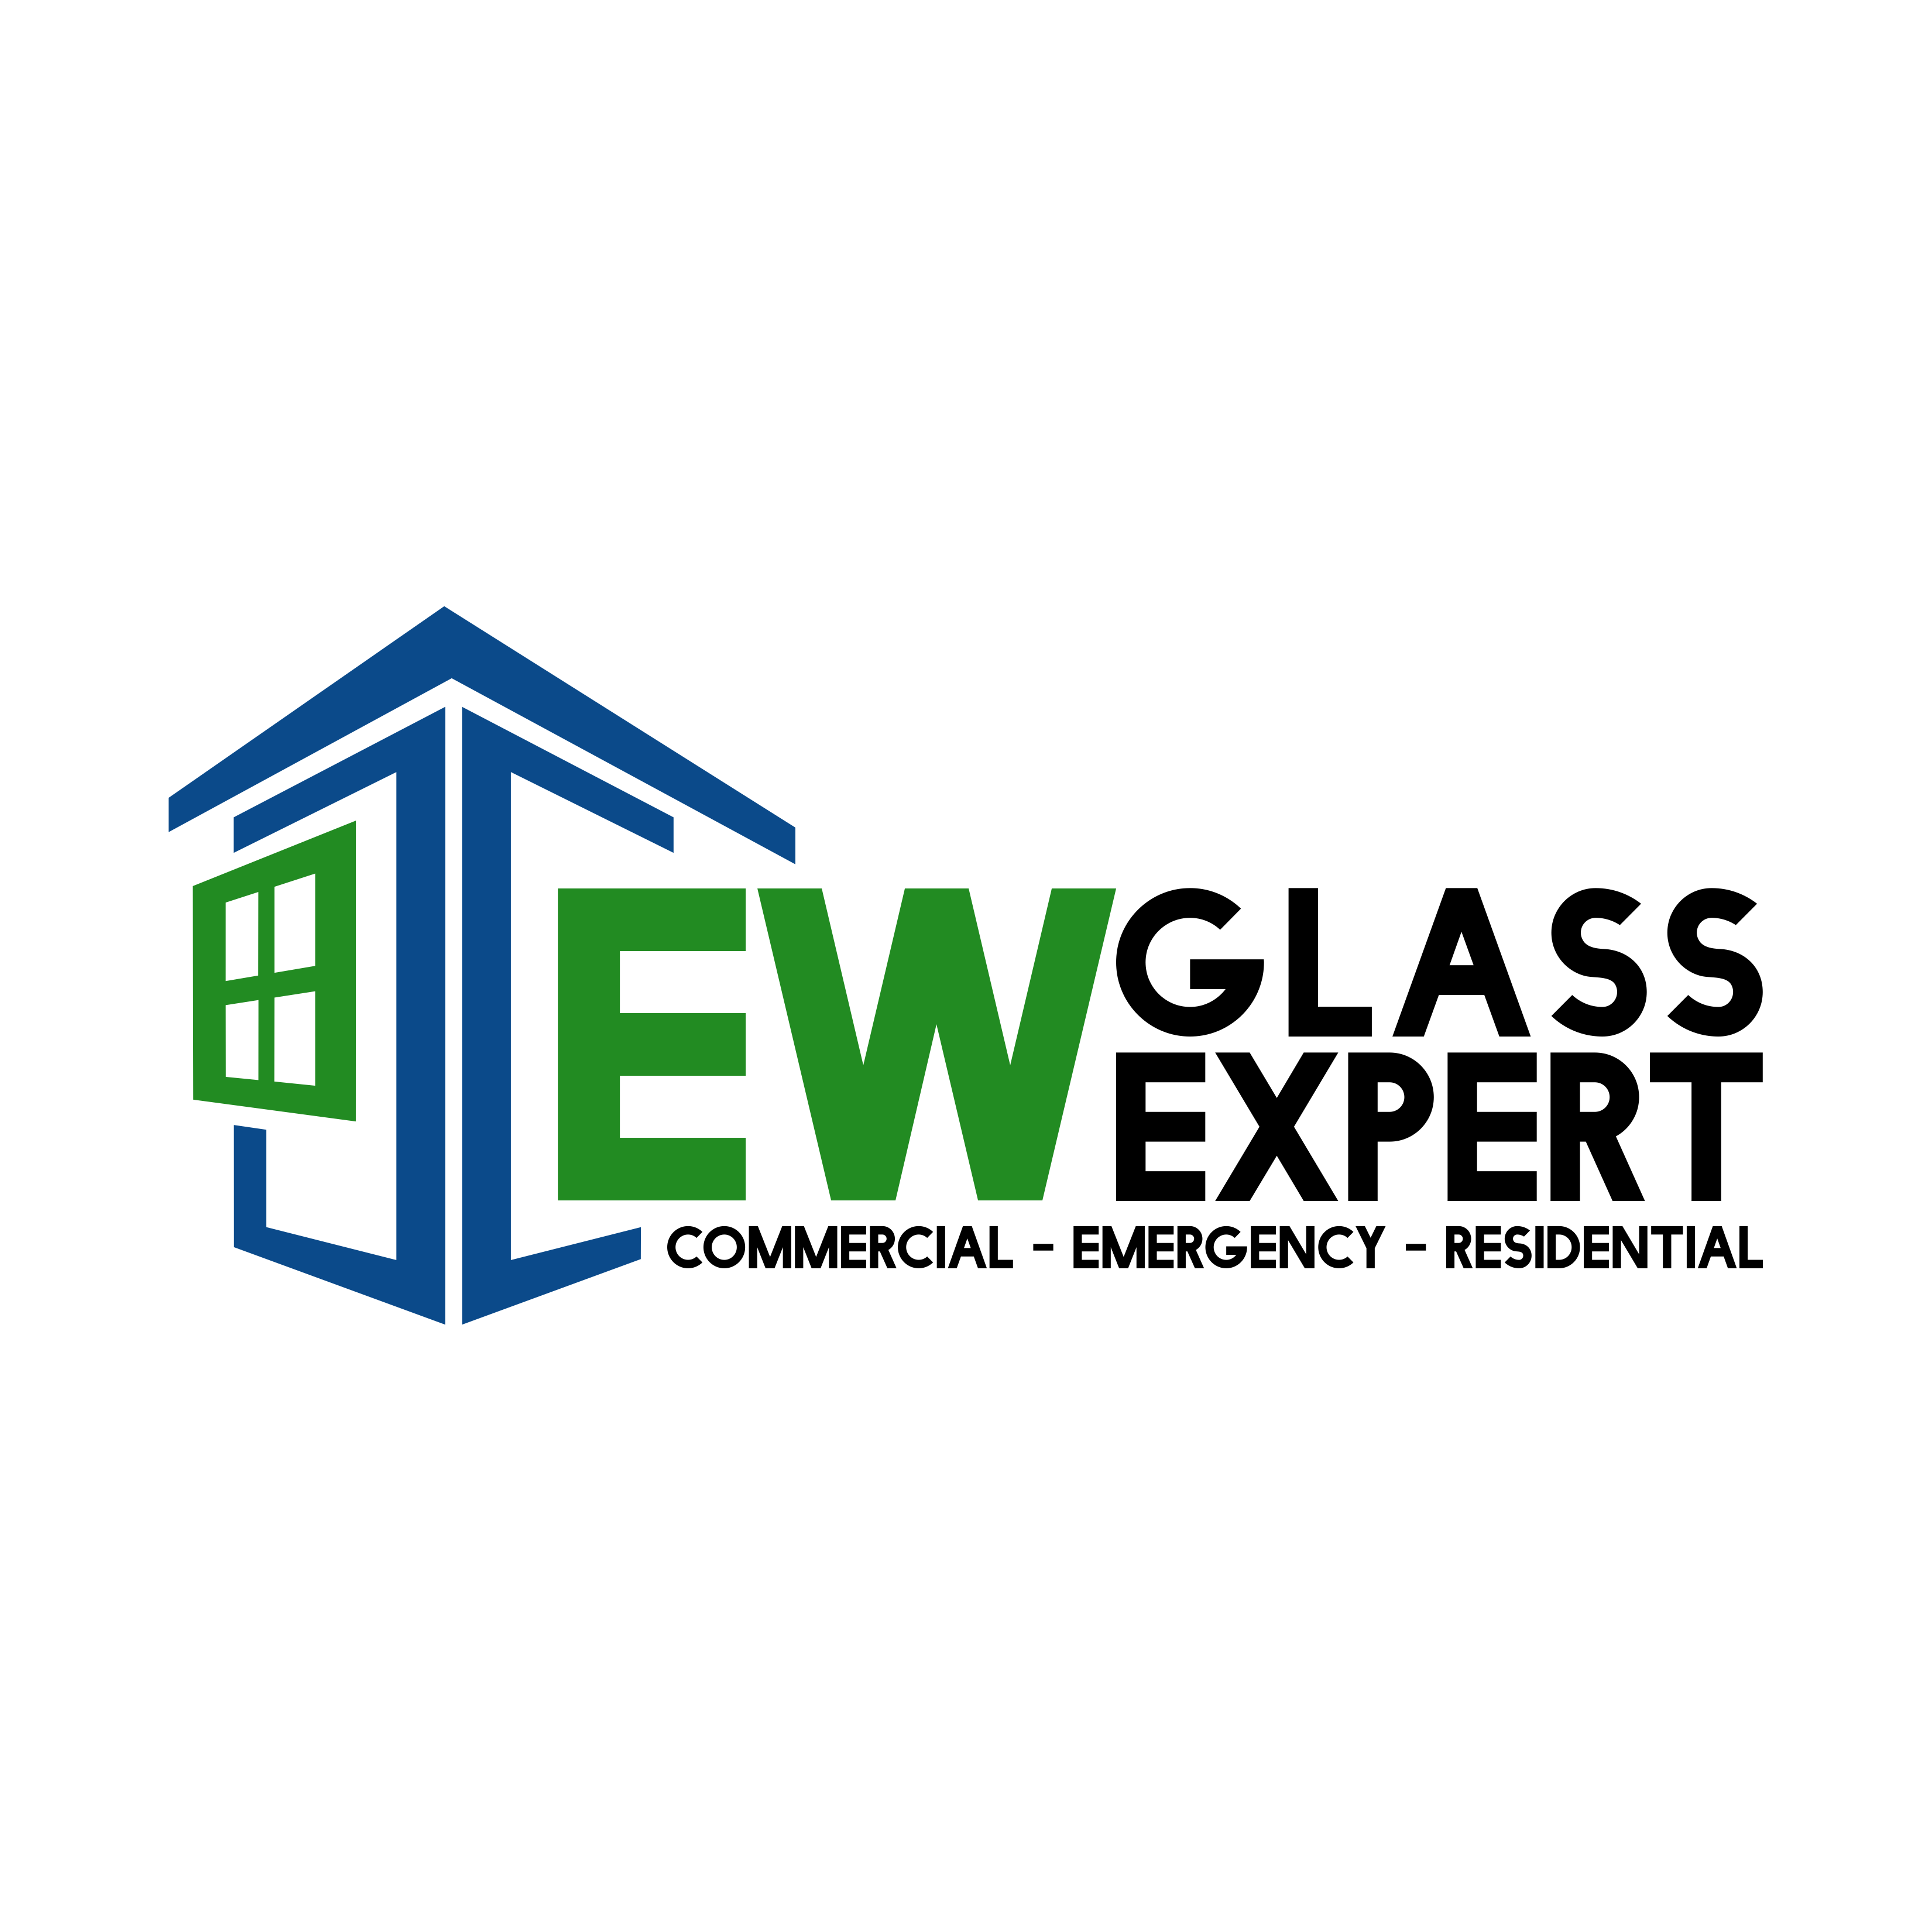 EW Glass Expert